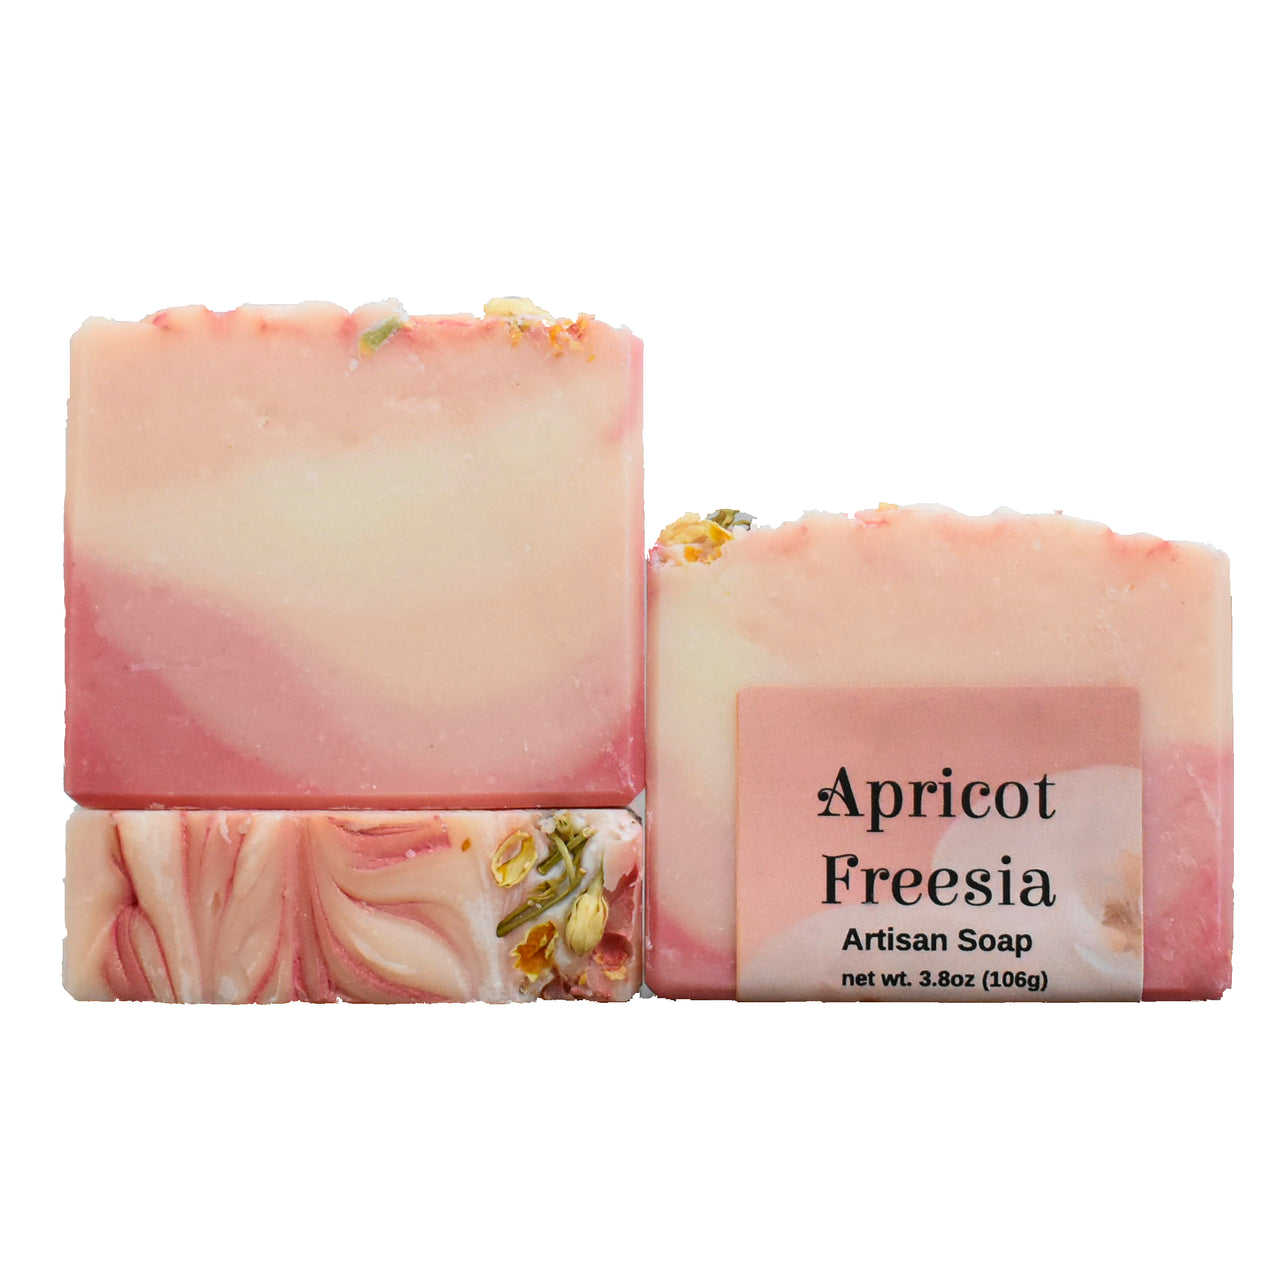 Apricot Freesia Artisan Soap (4oz bar) - Mercantile Mountain